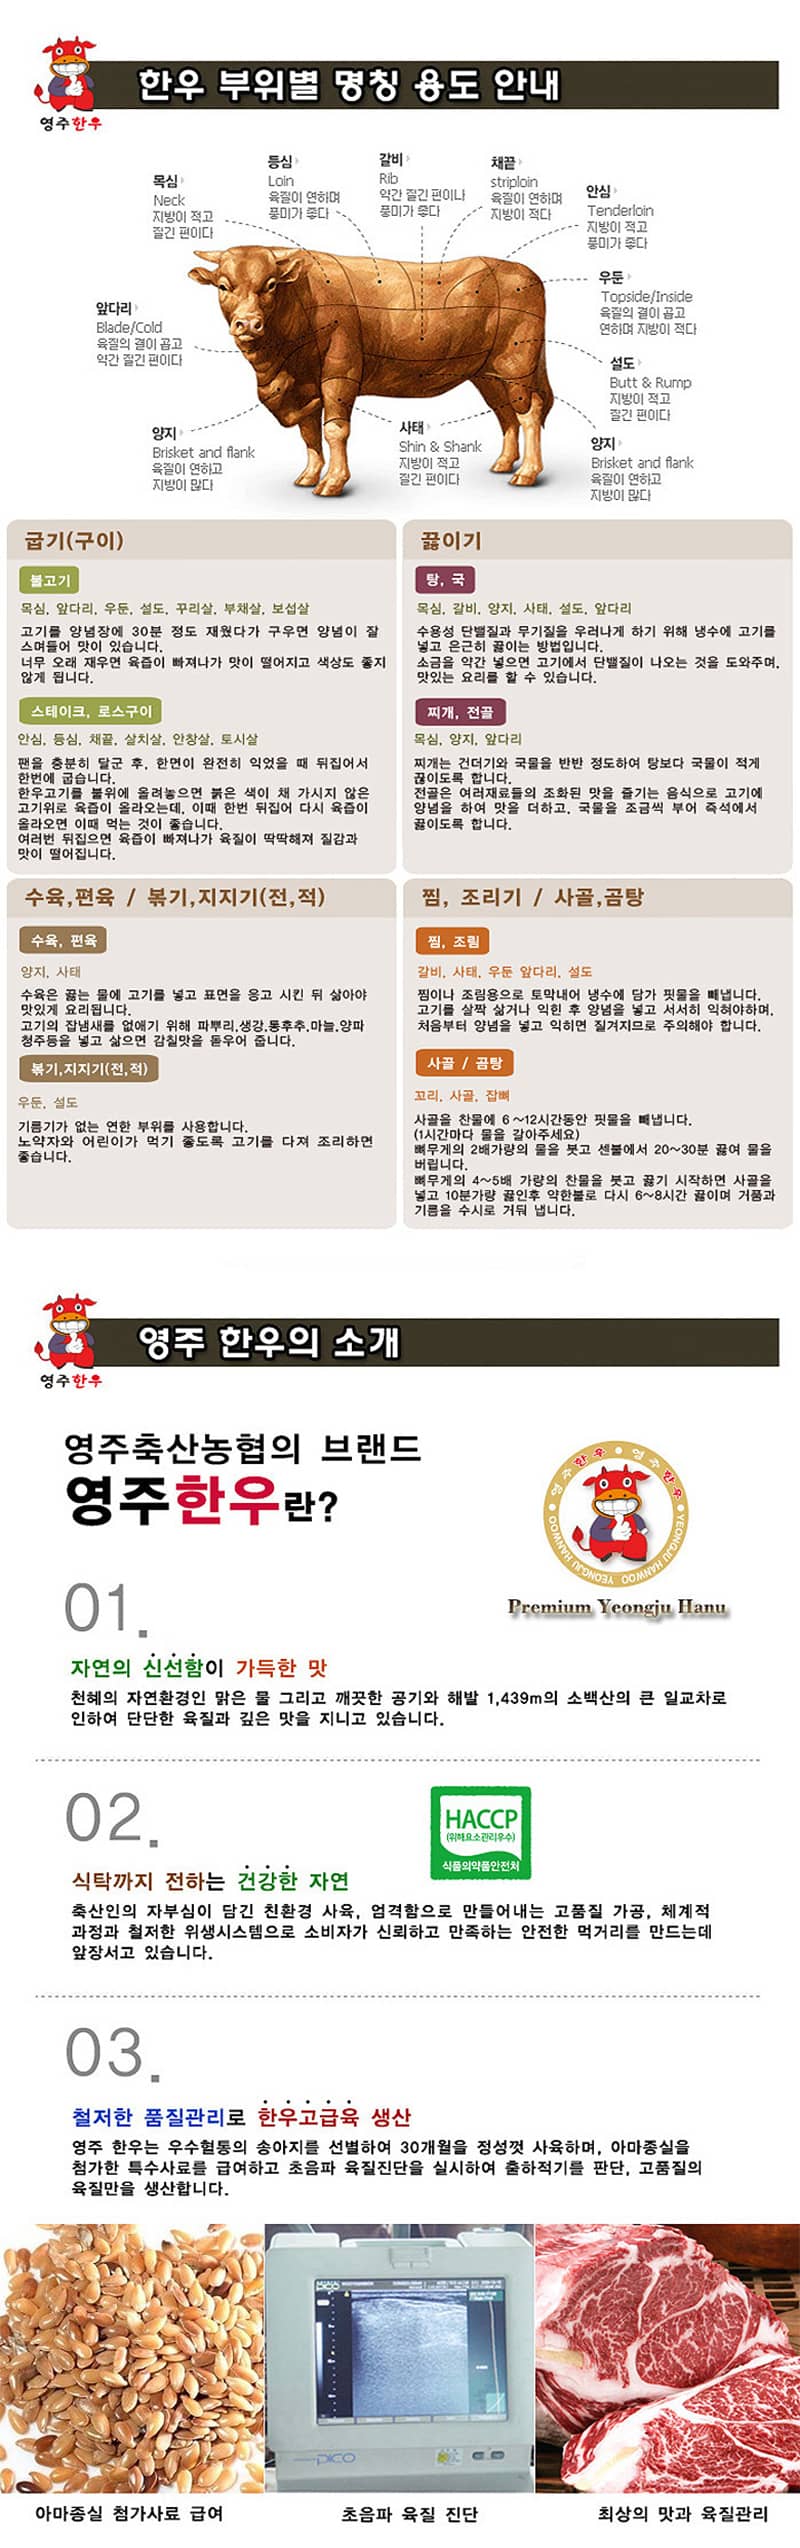 yeongjuchughyeob-yeongju_hanu_teugseon_3ho_detail_800_5.jpg